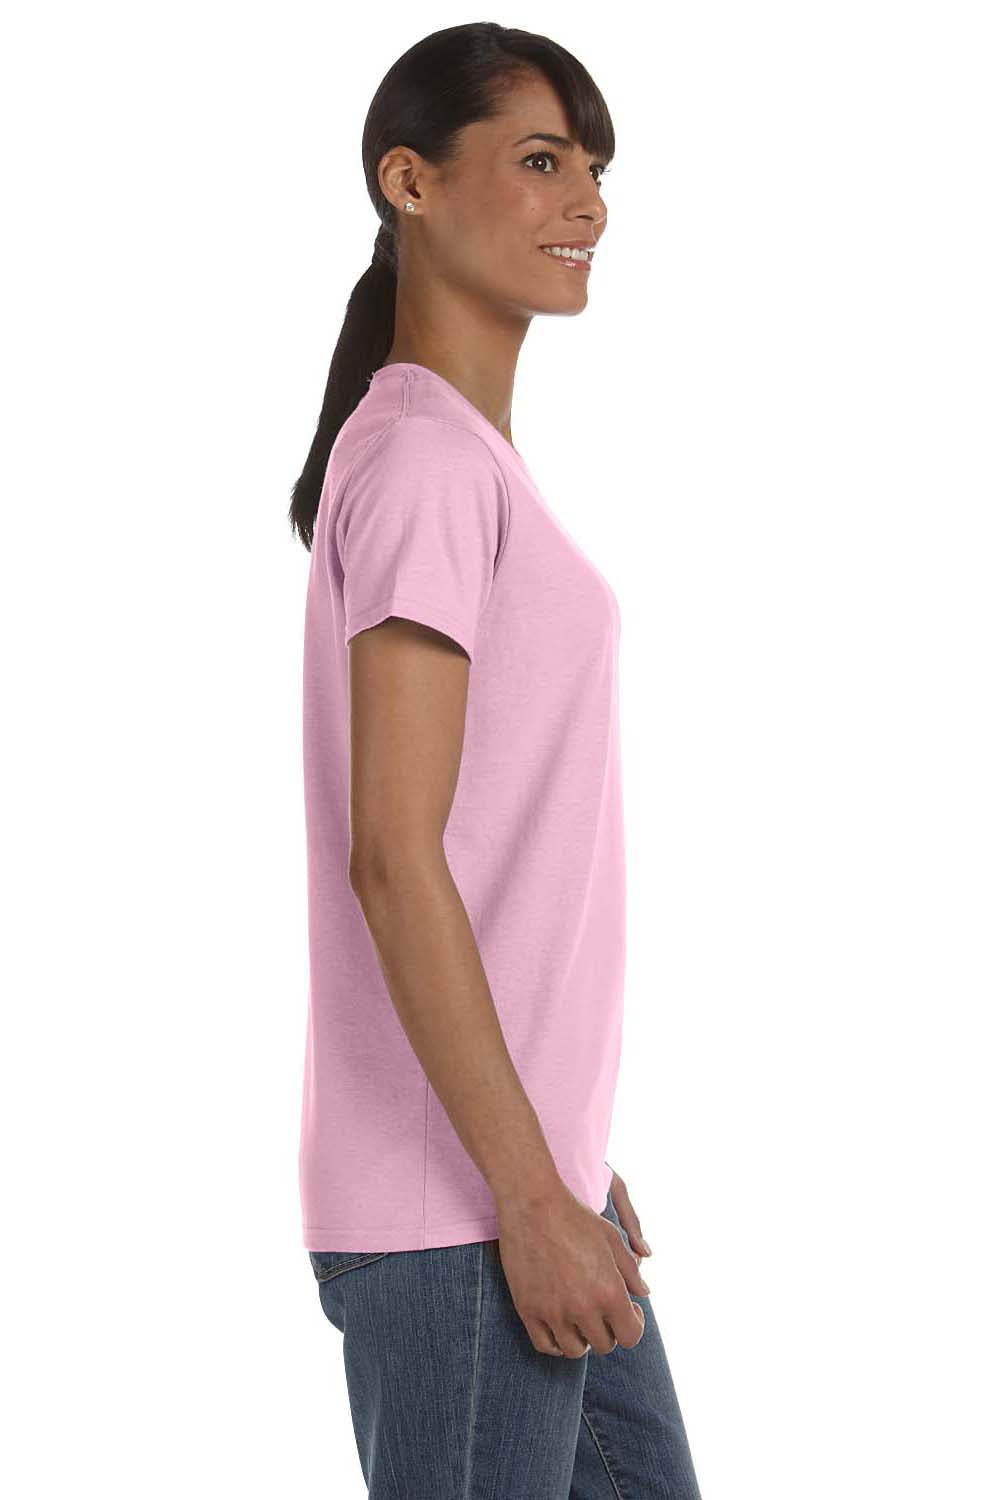 Gildan G500L Womens Short Sleeve Crewneck T-Shirt Light Pink Side